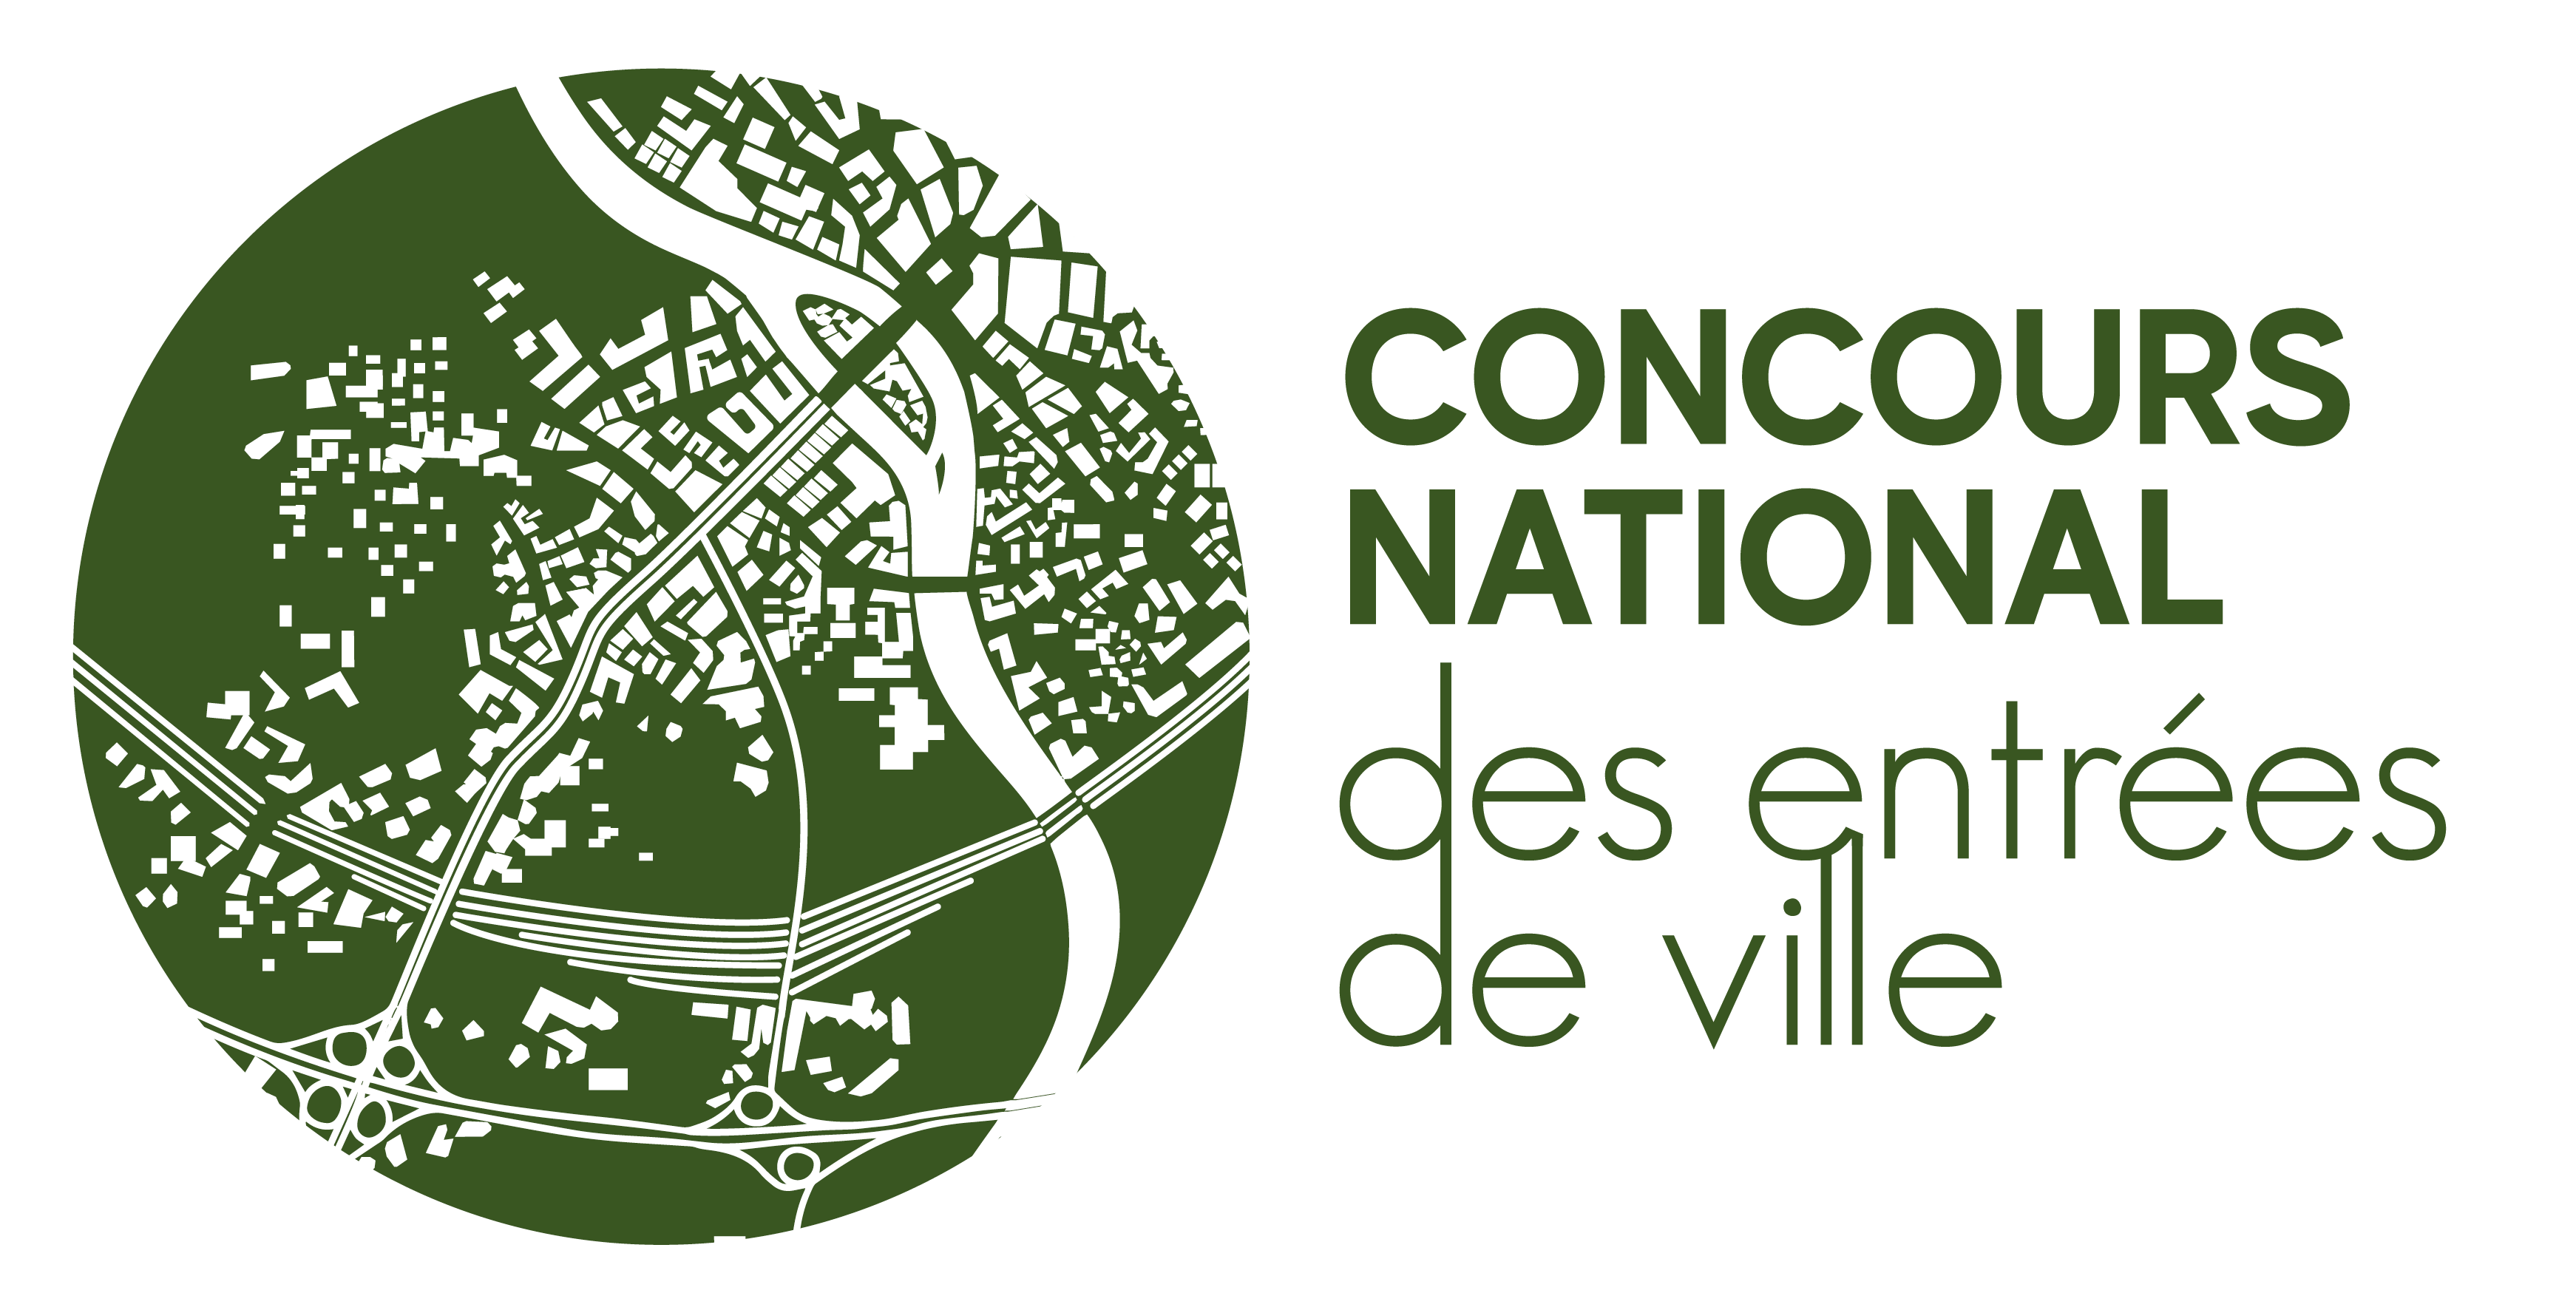 CONCOURS NATIONAL DES ENTRÉES DE VILLE